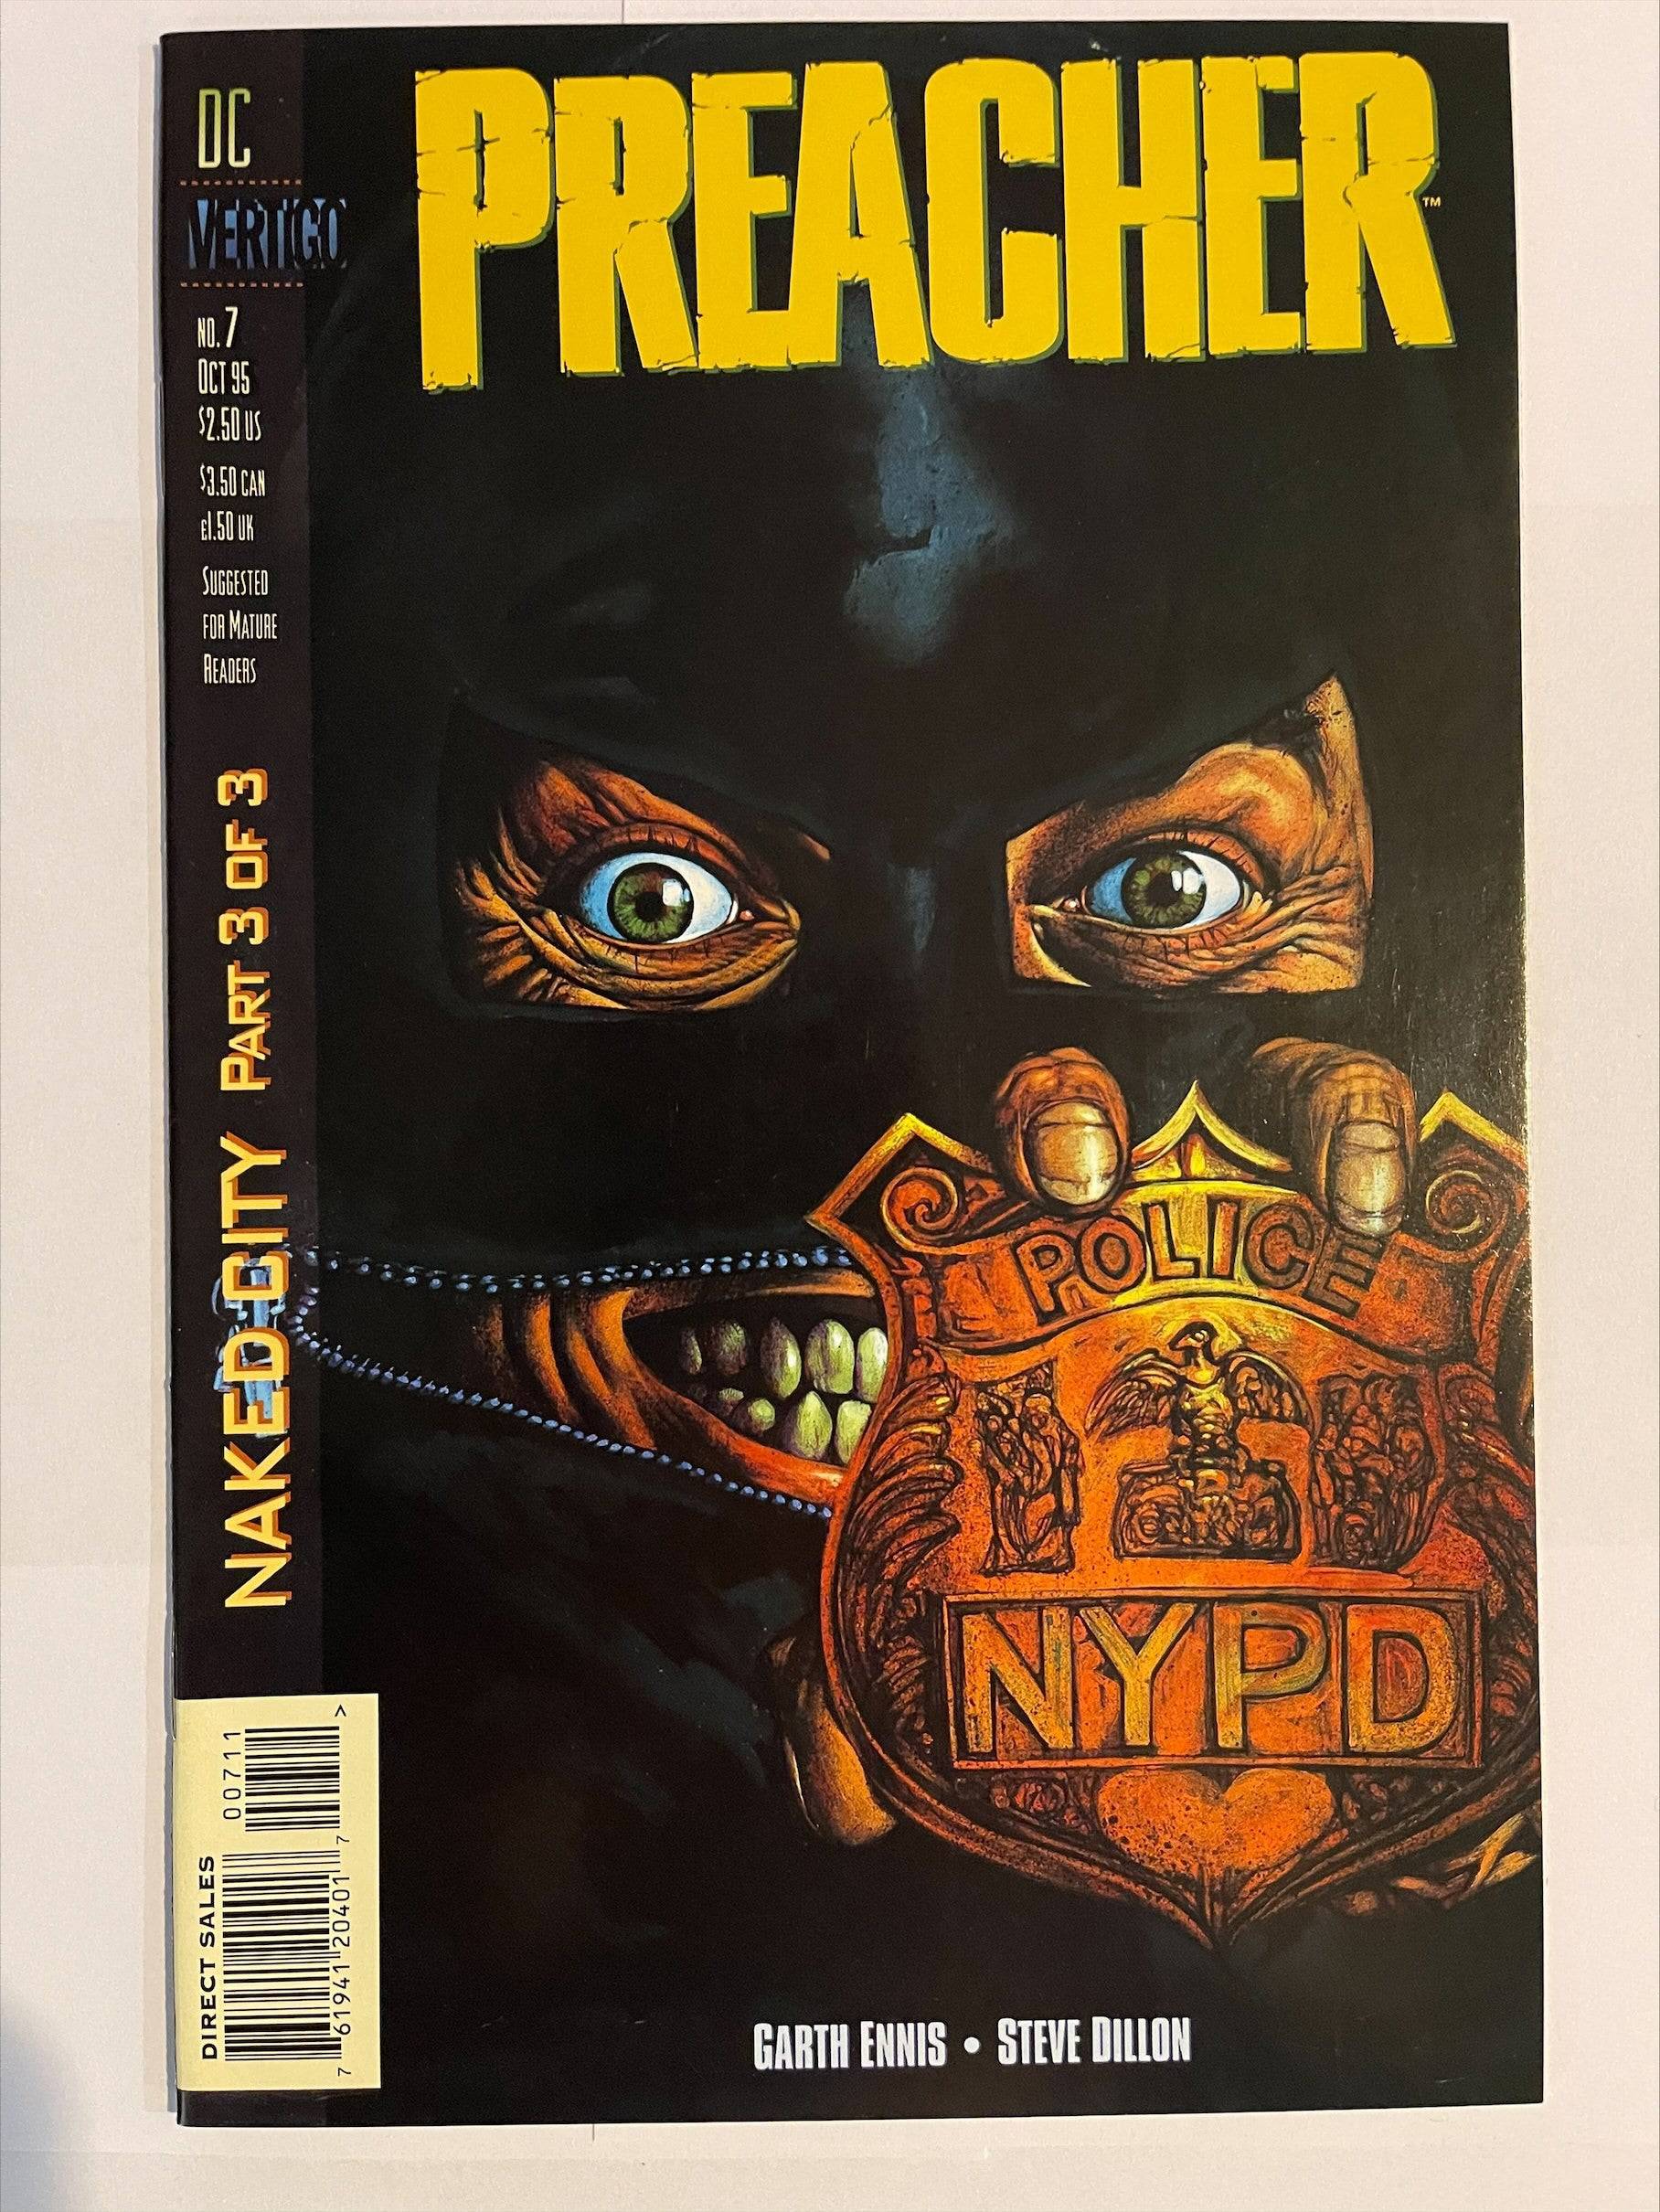 Preacher #7 Oct 1995 DC Vertigo NM "Naked City" - Rare/Collect King Gaming